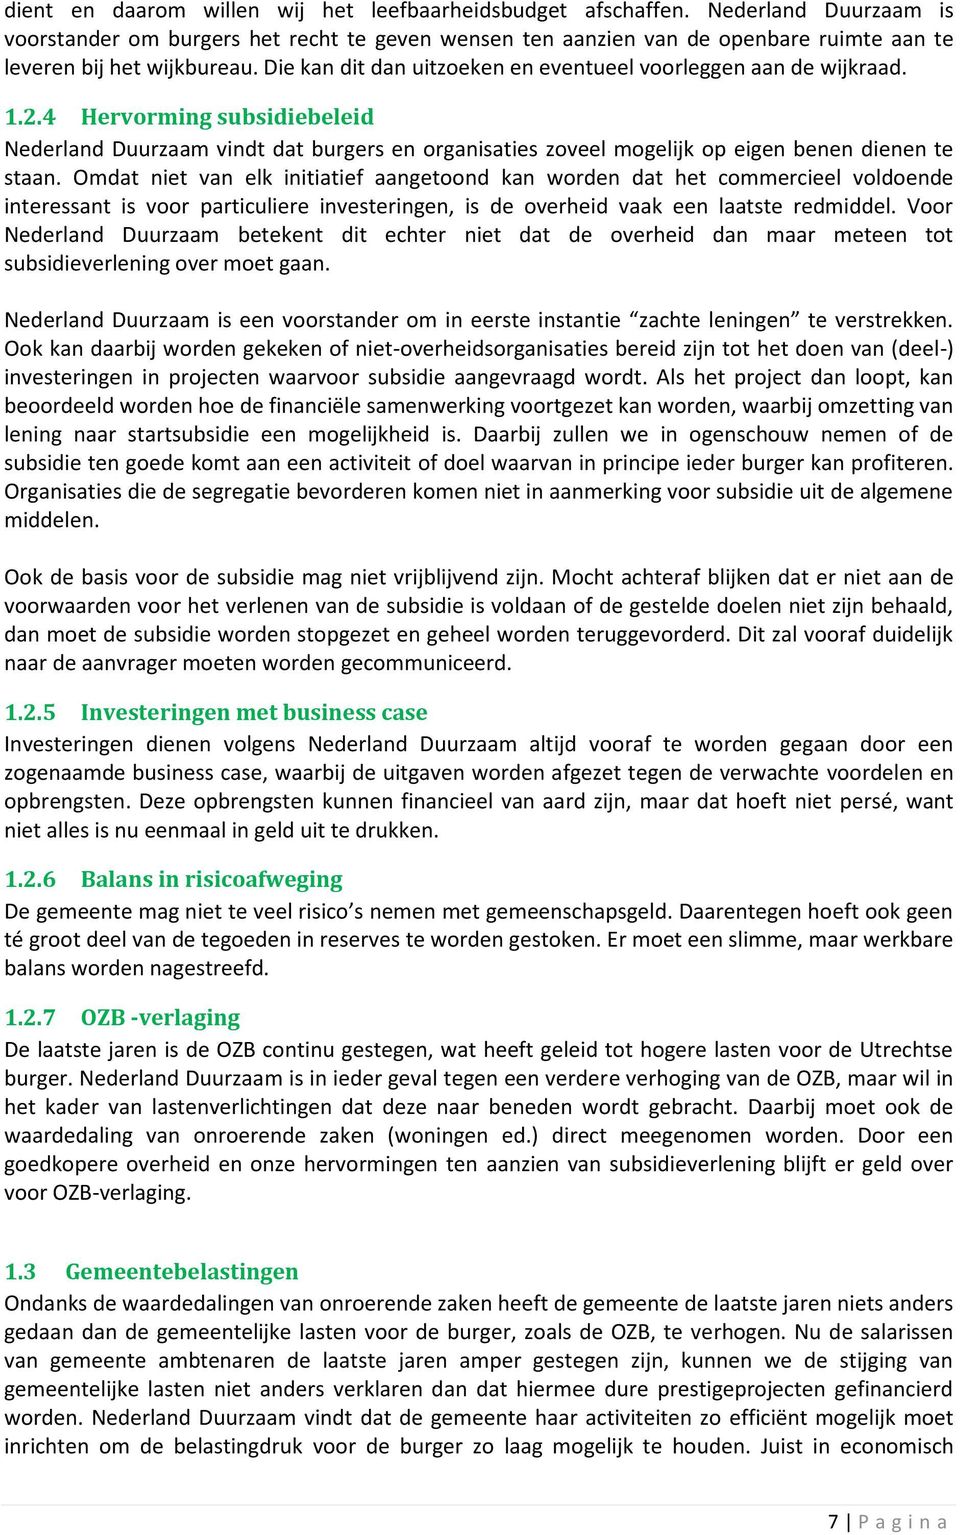 Die kan dit dan uitzoeken en eventueel voorleggen aan de wijkraad. 1.2.4 Hervorming subsidiebeleid Nederland Duurzaam vindt dat burgers en organisaties zoveel mogelijk op eigen benen dienen te staan.